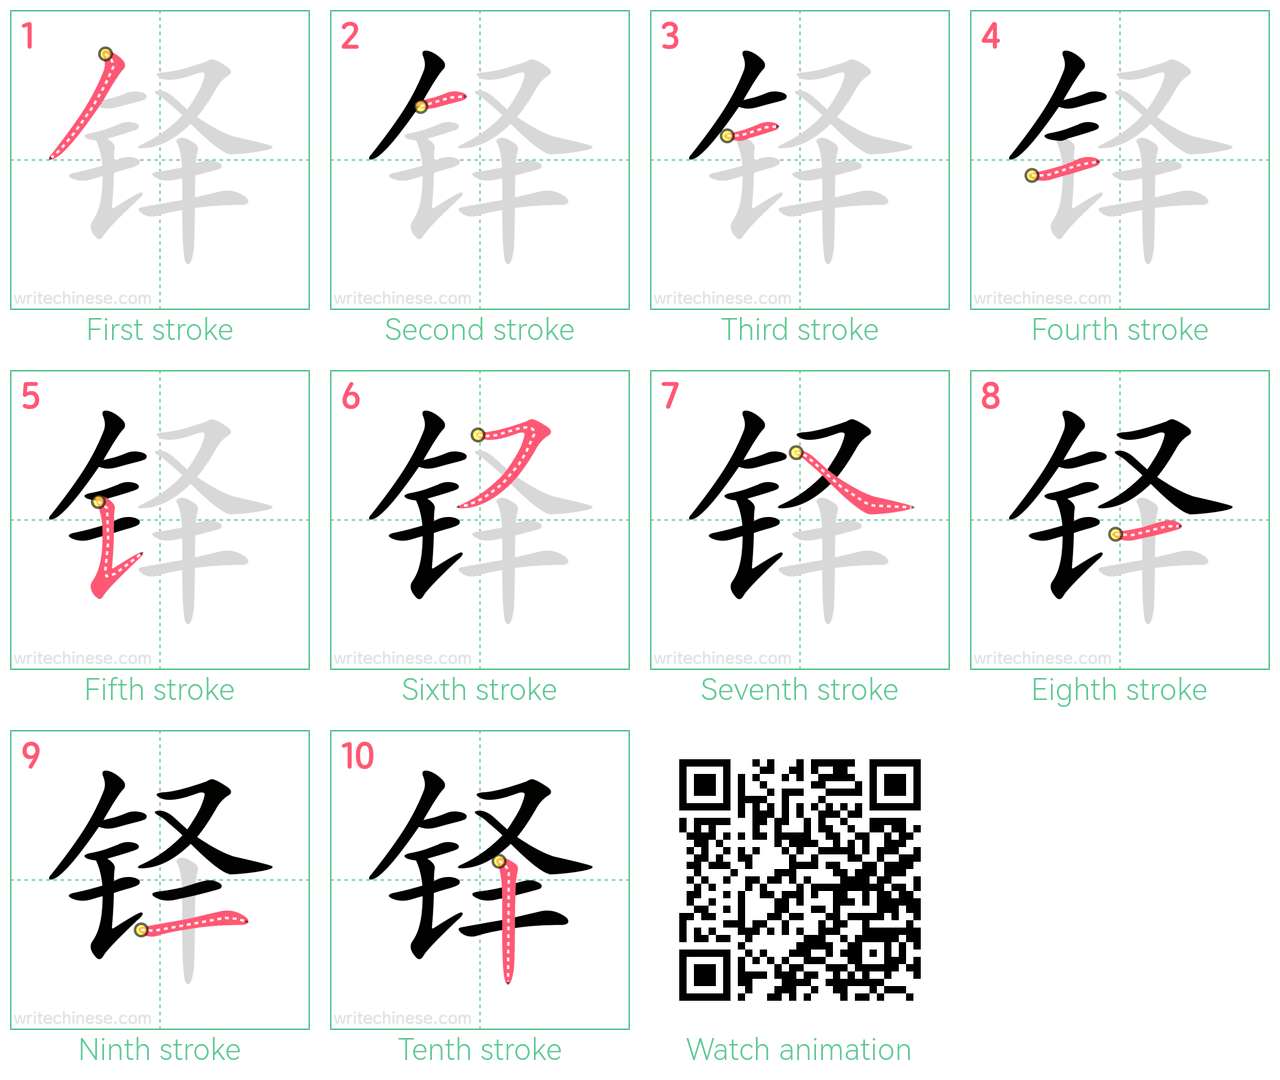 铎 step-by-step stroke order diagrams